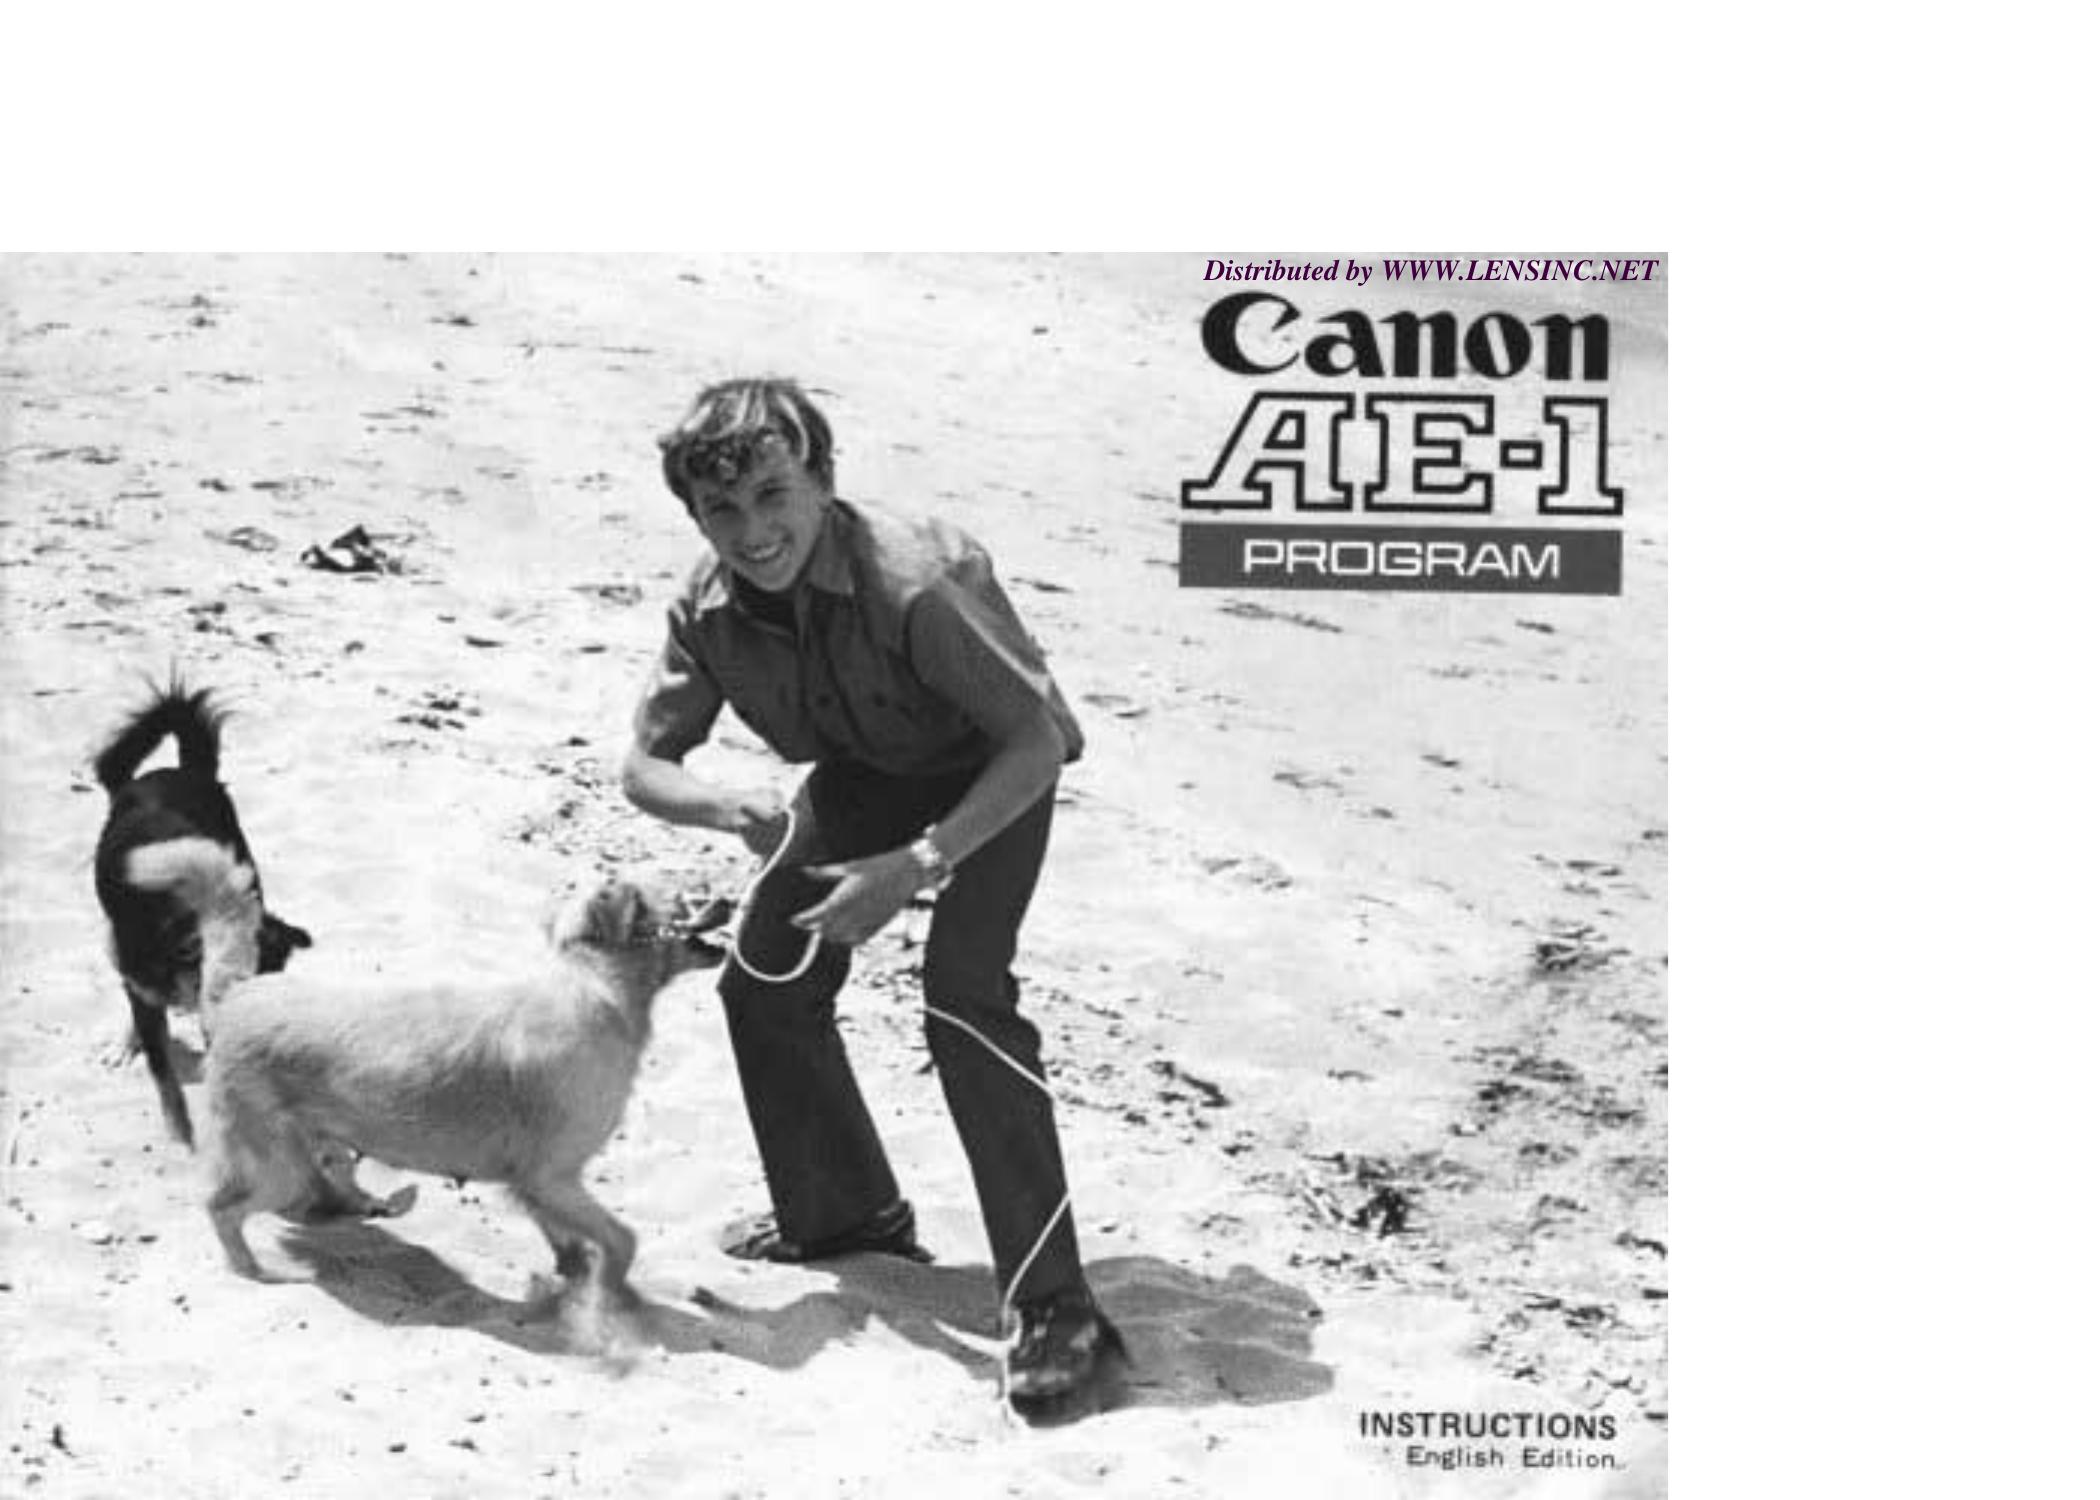 Canon AE-1 Film Camera User Manual